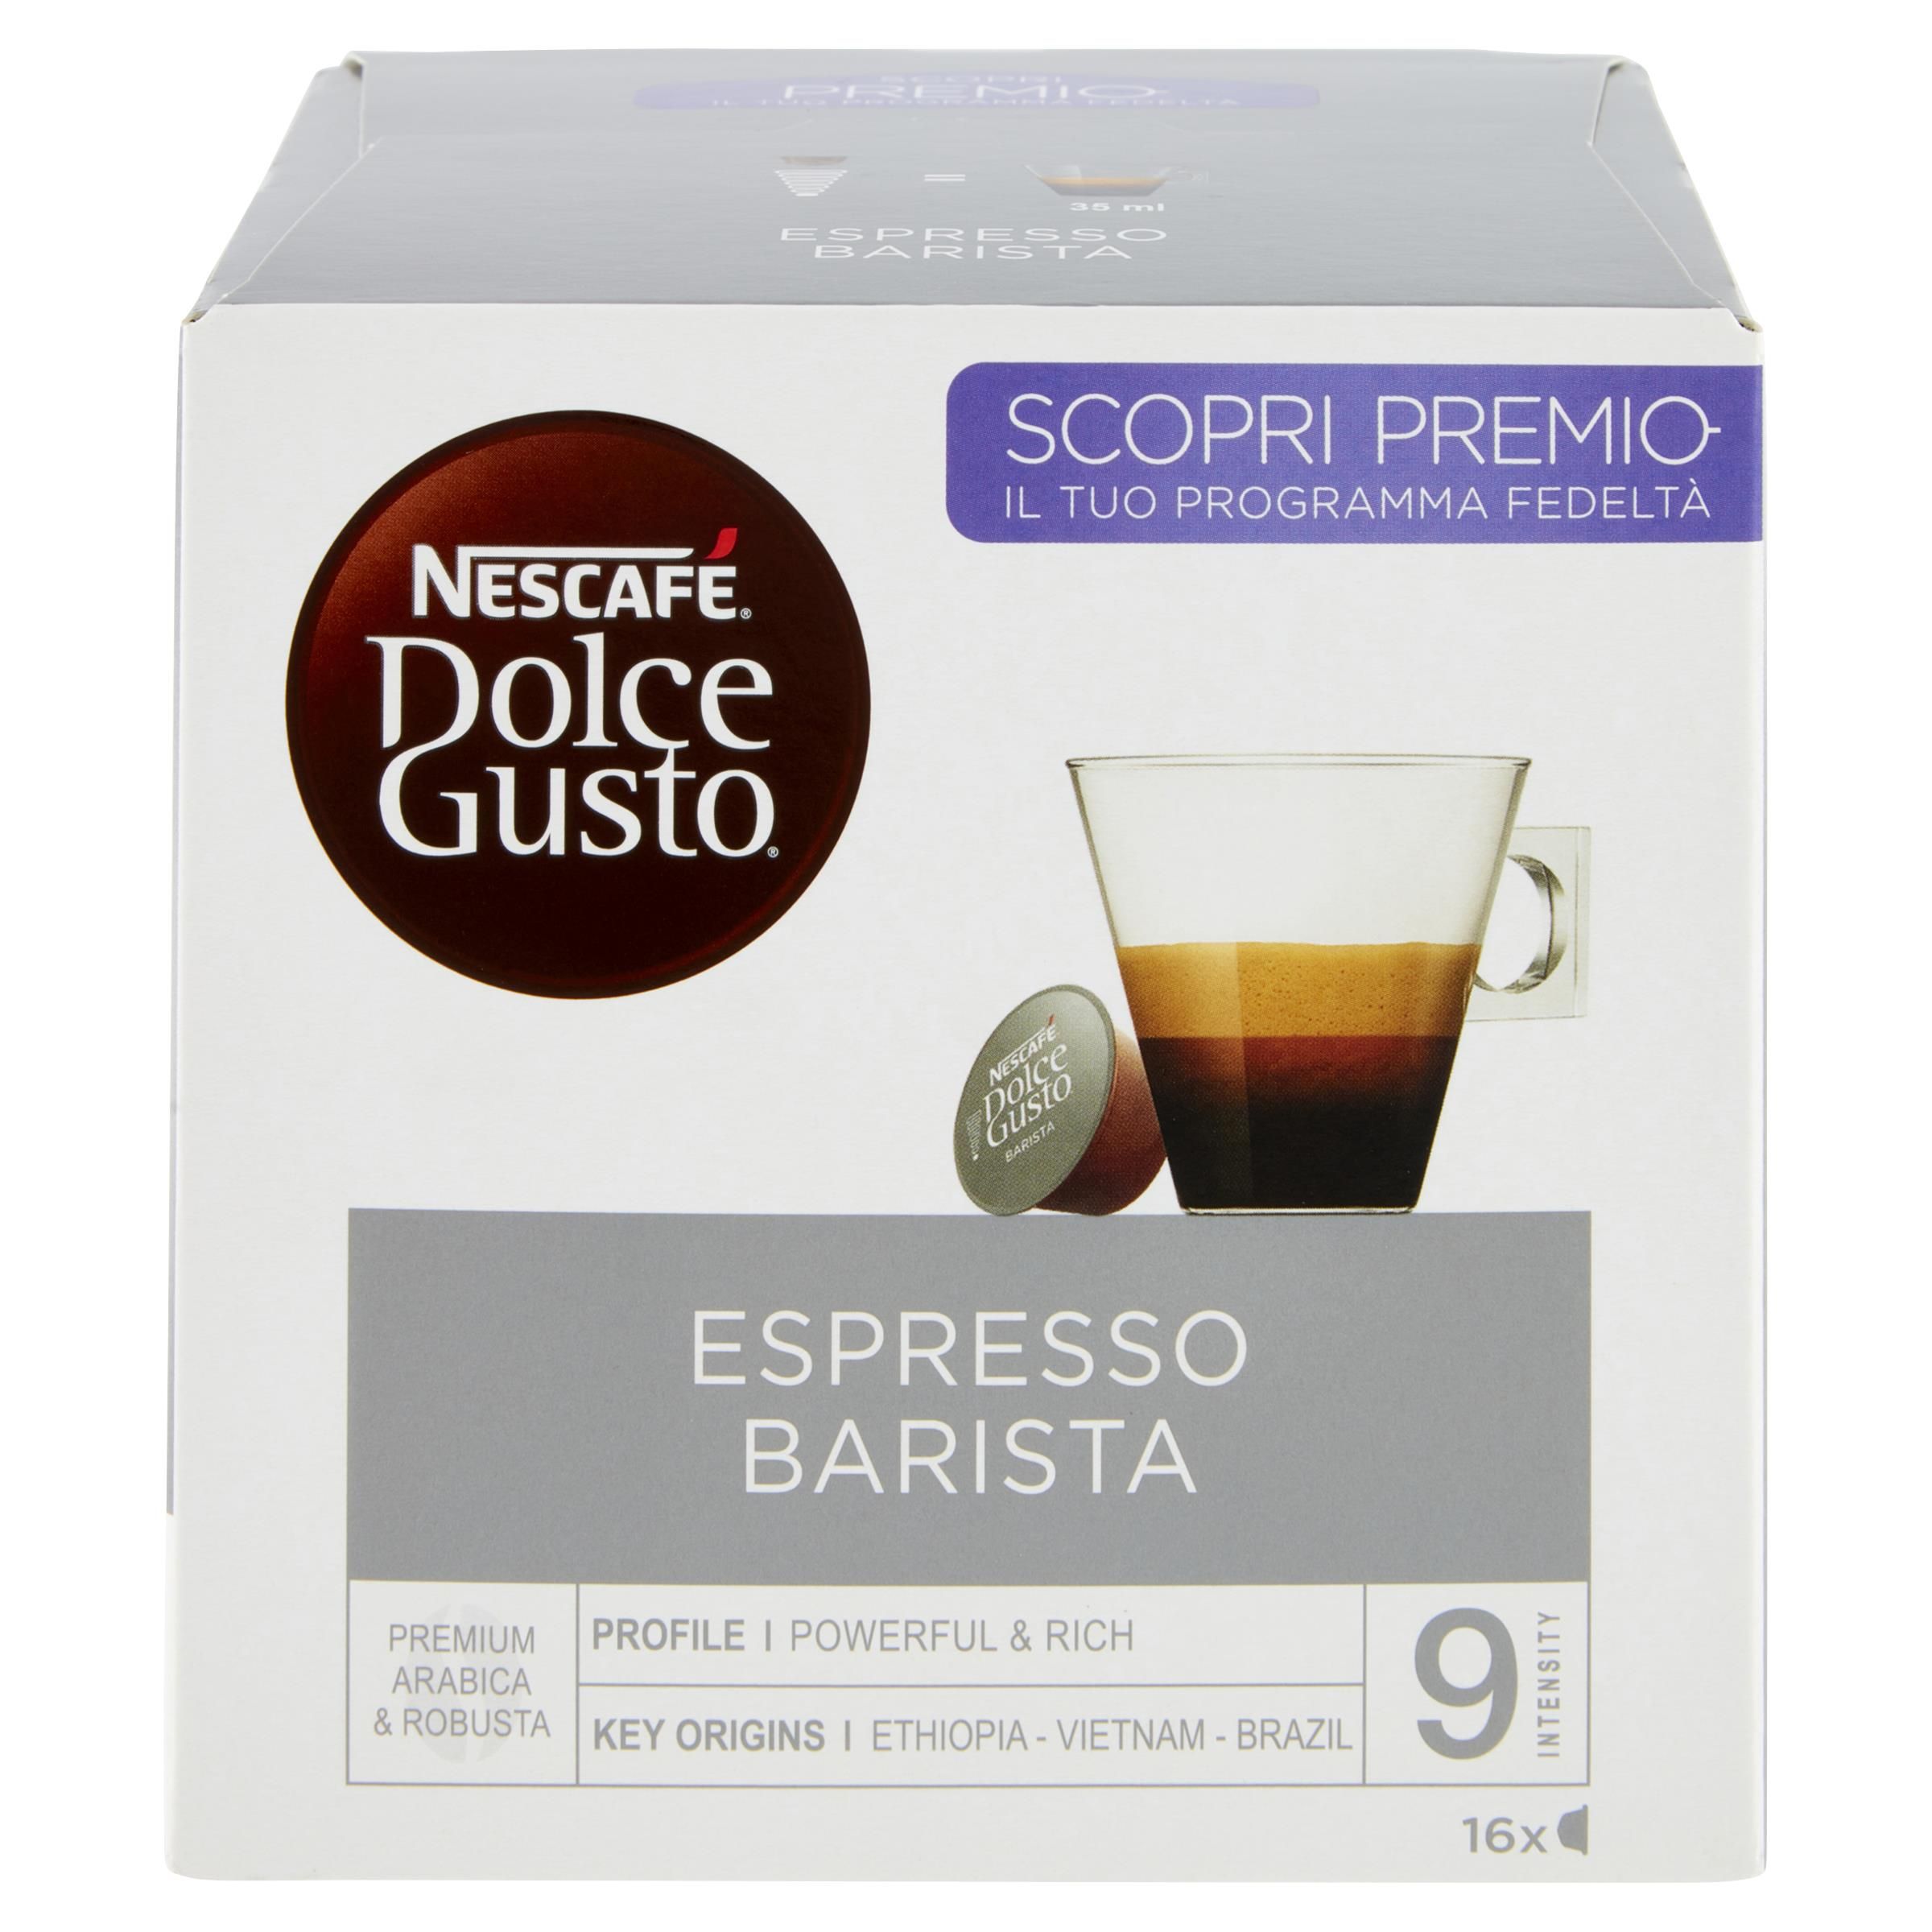 Nestle' Capsule Nescafe' Dolce Gusto Espresso Barista 16